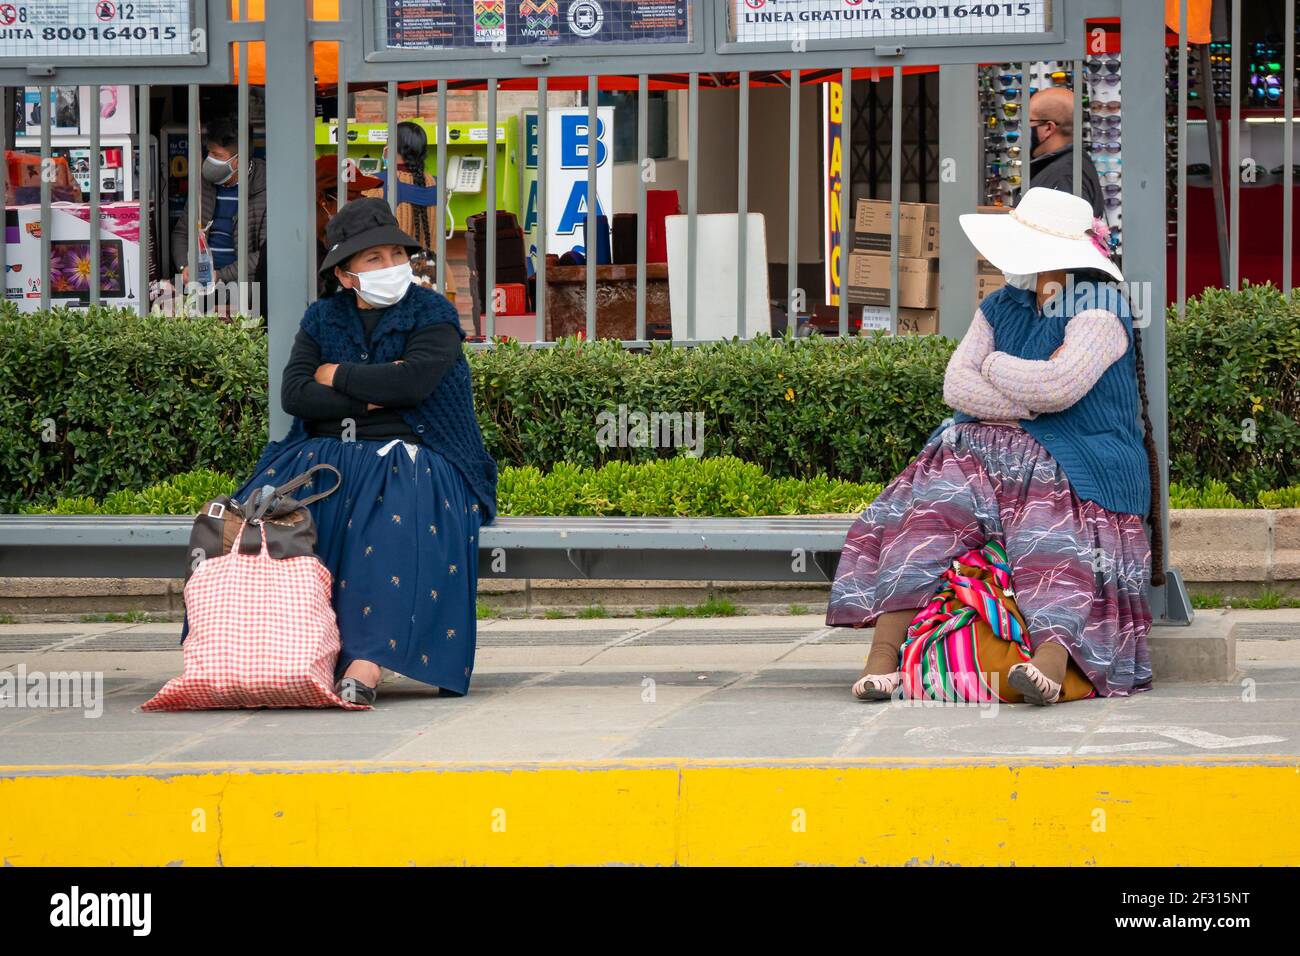 El Alto, la Paz, Bolivie - février 11 2021: Femmes autochtones boliviennes connues sous le nom de 'Cholitas', assis sur un banc à un mètre l'une de l'autre pendant que nous Banque D'Images